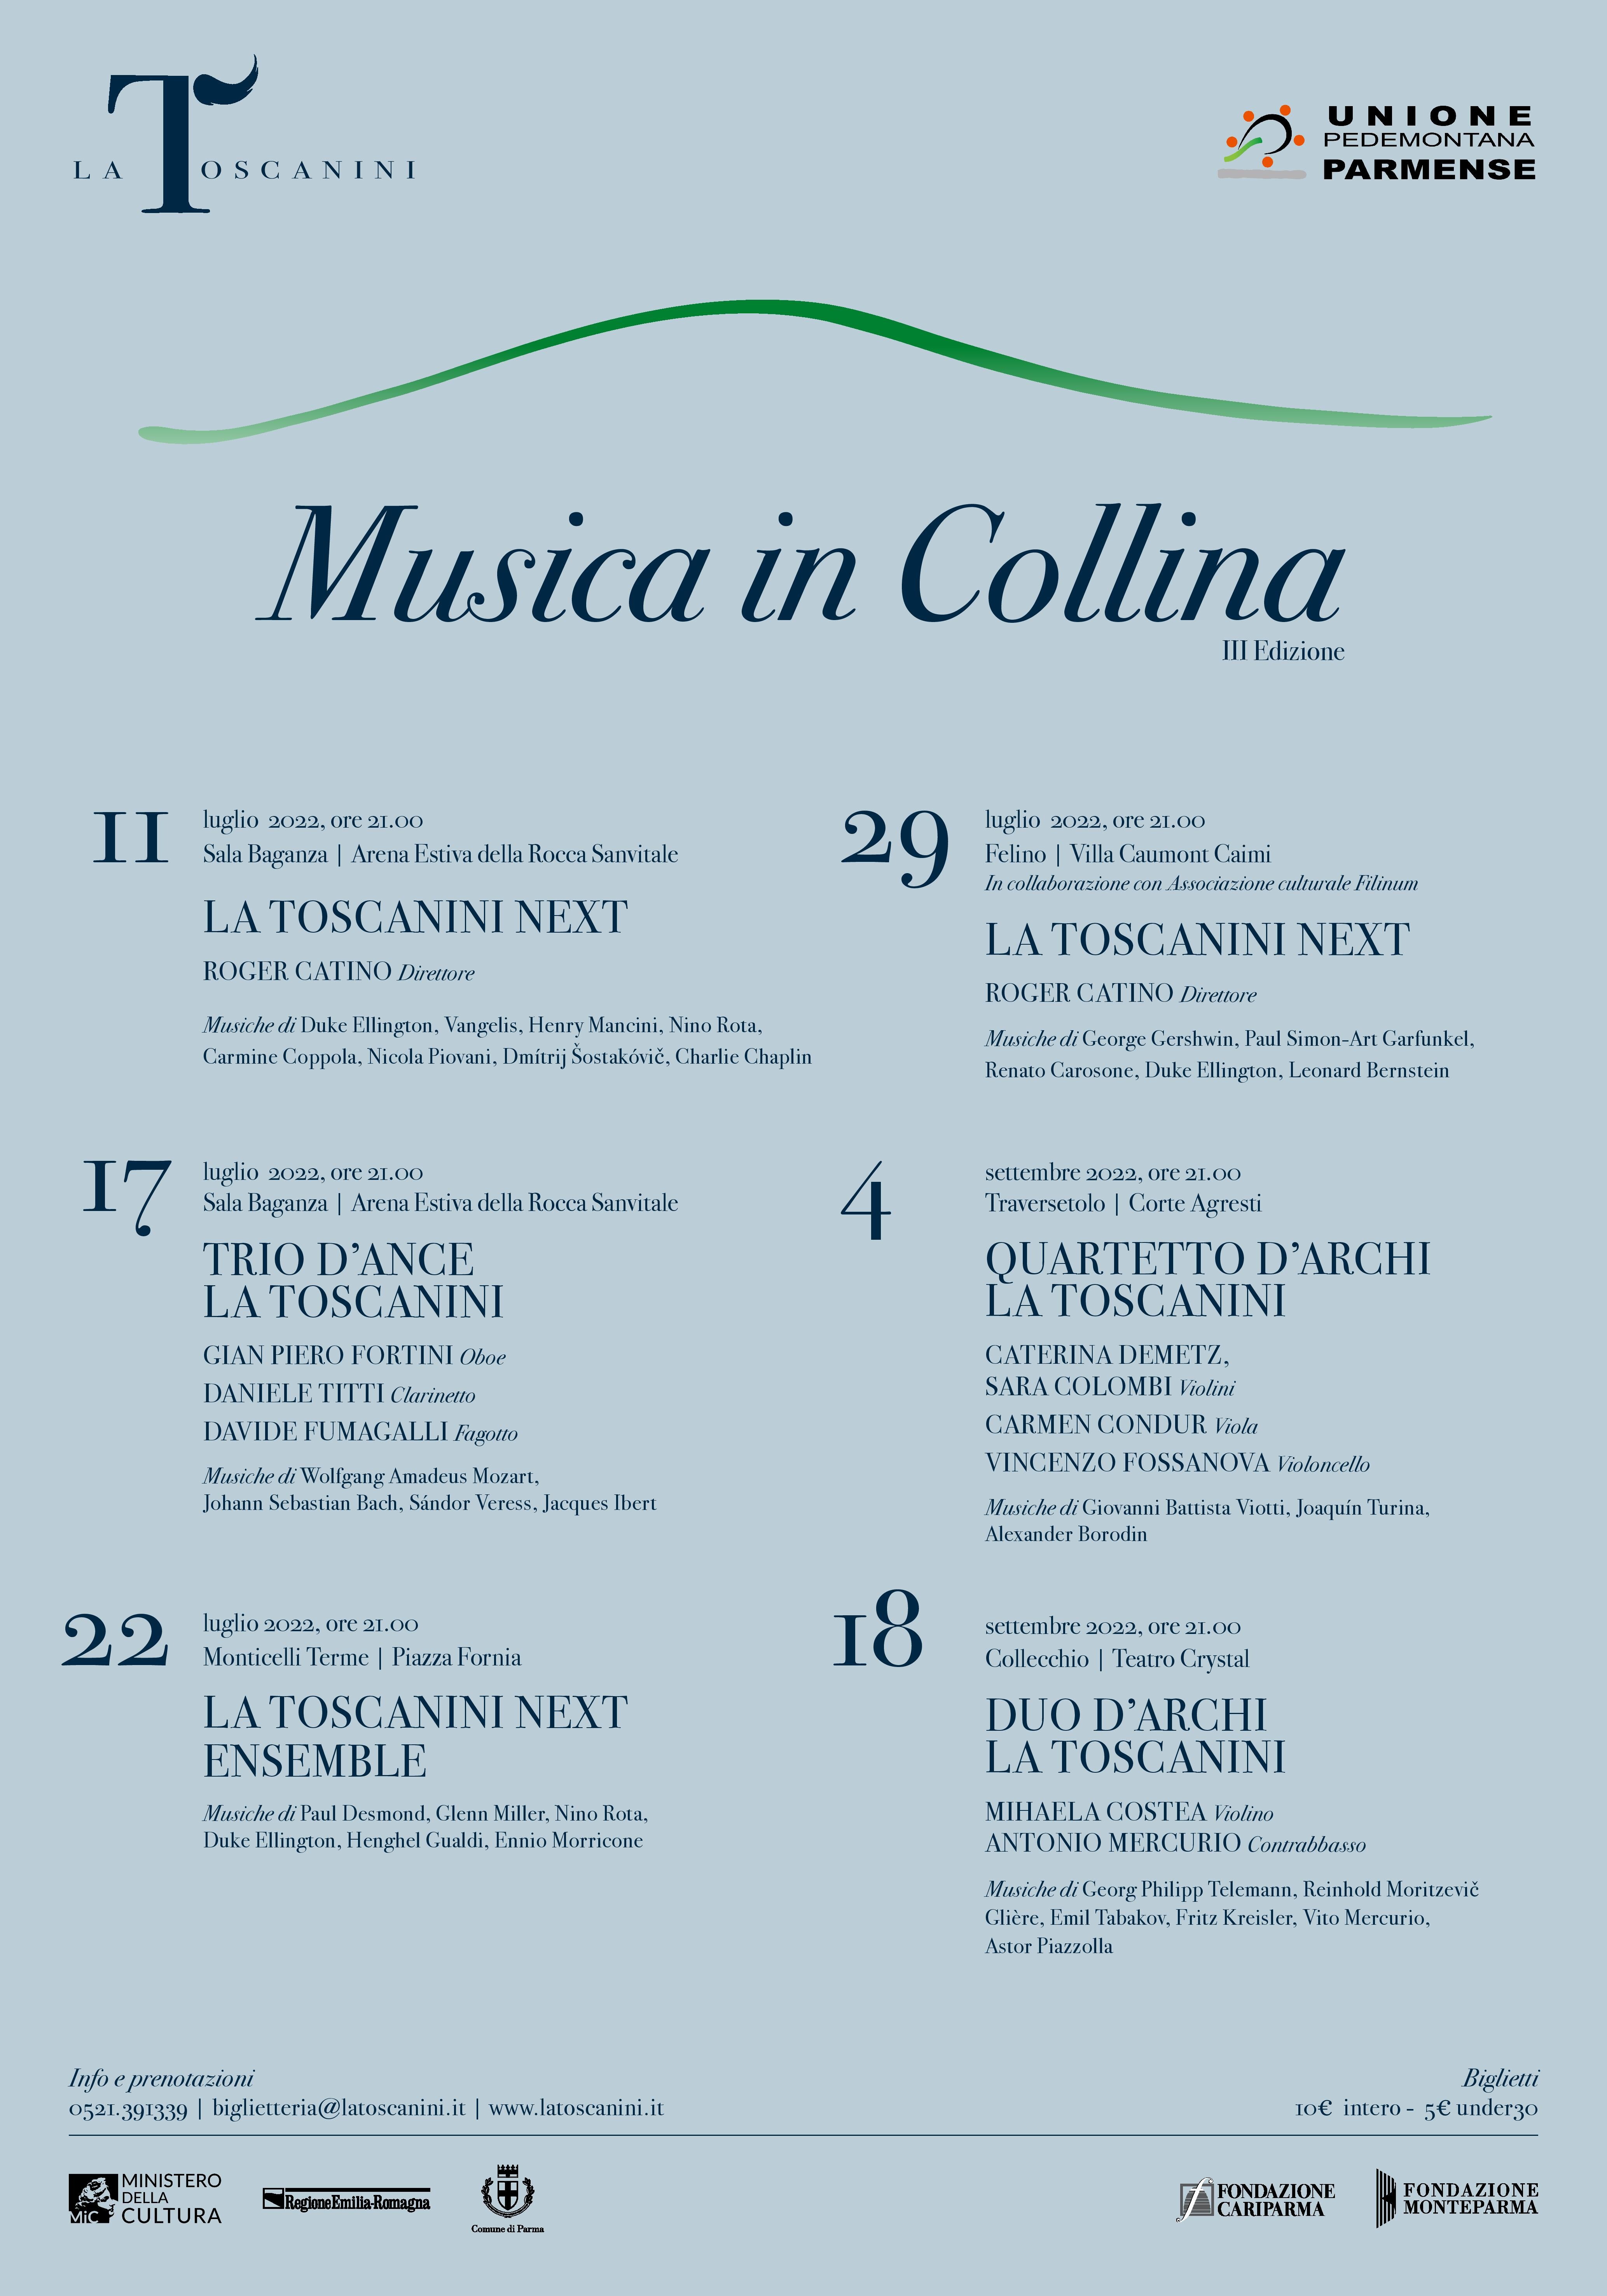 Musica in Collina 2022 -  concerti de La Toscanini nei comuni dell'Unione Pedemontana